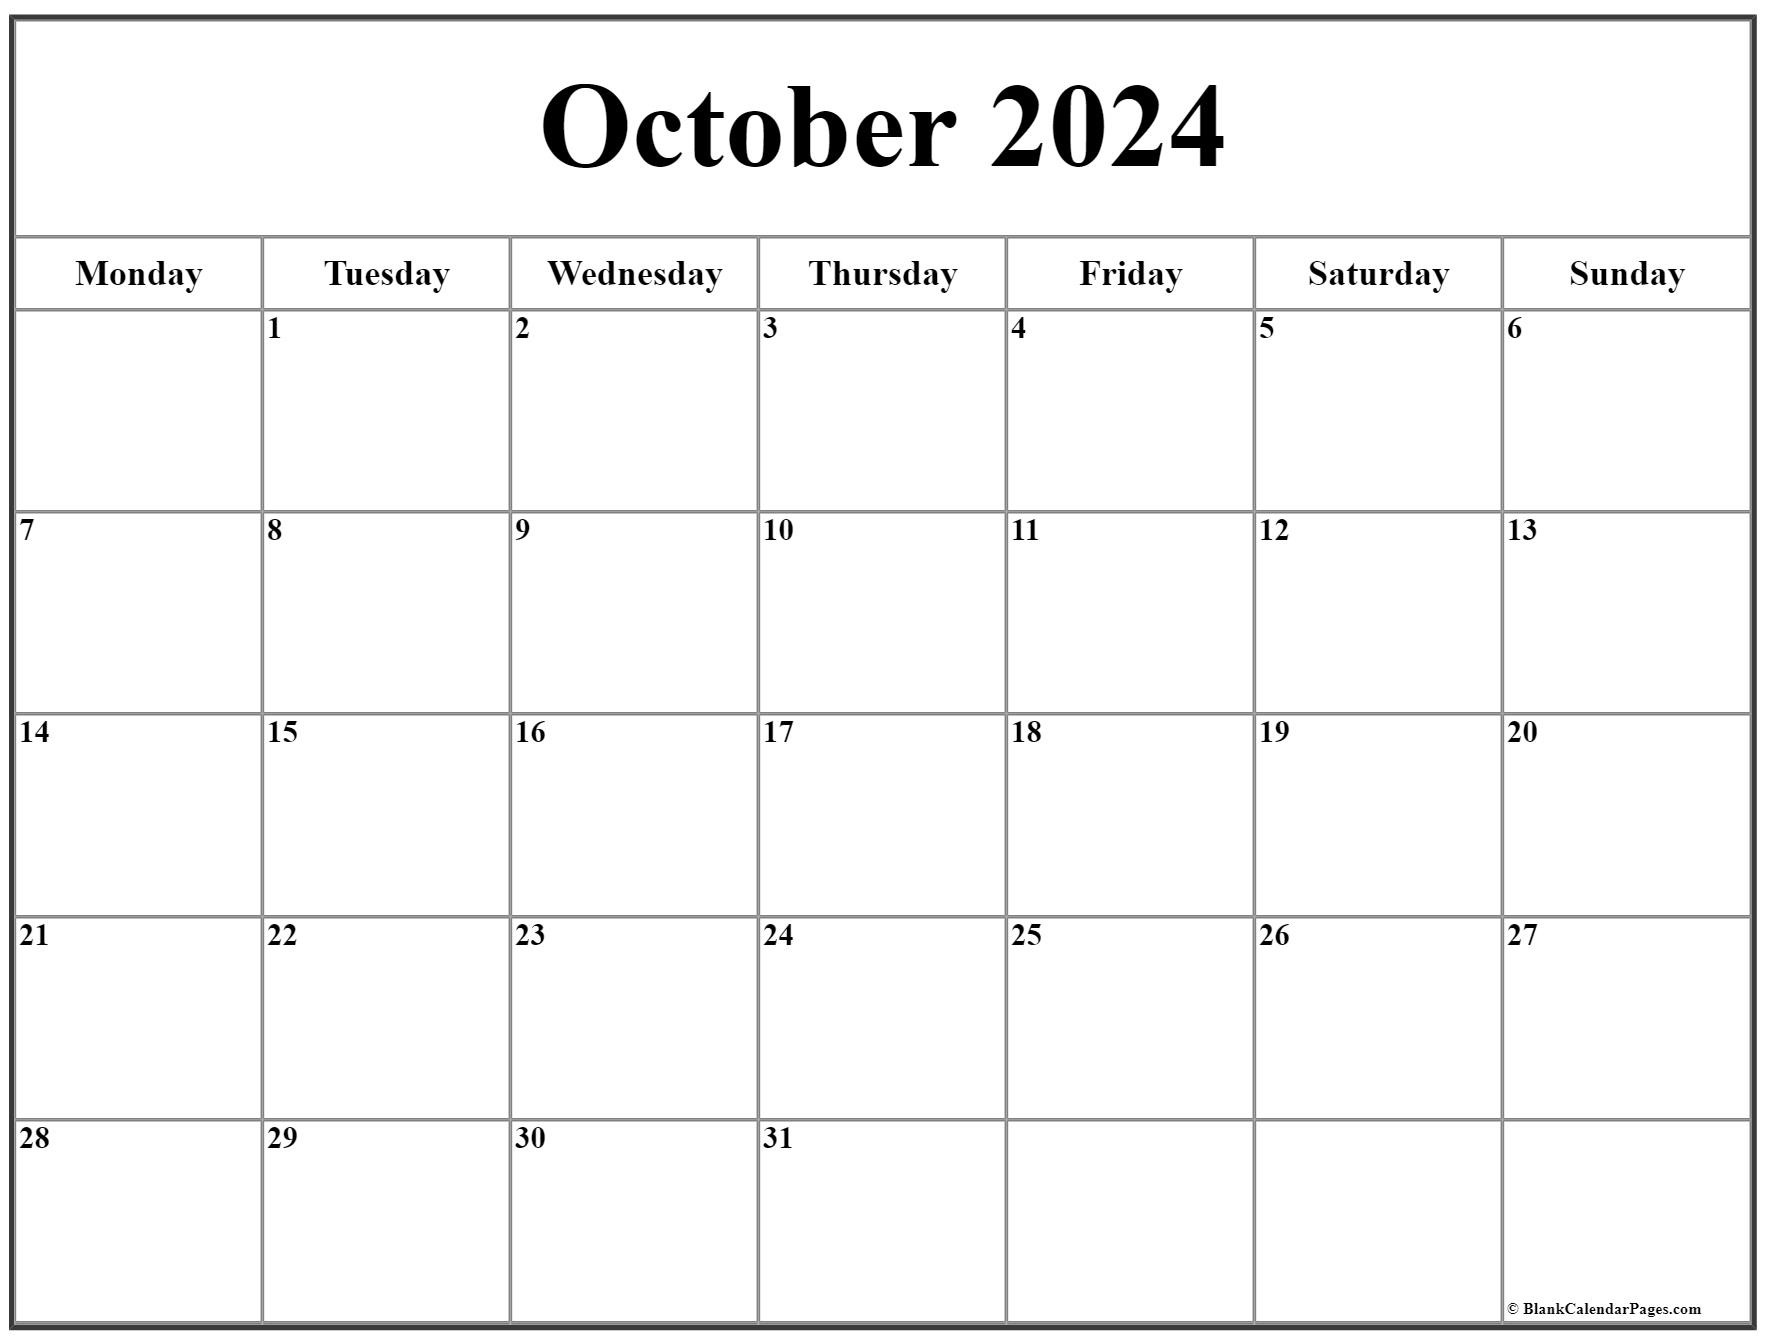 Oct 2022 Calendar October 2022 Monday Calendar | Monday To Sunday